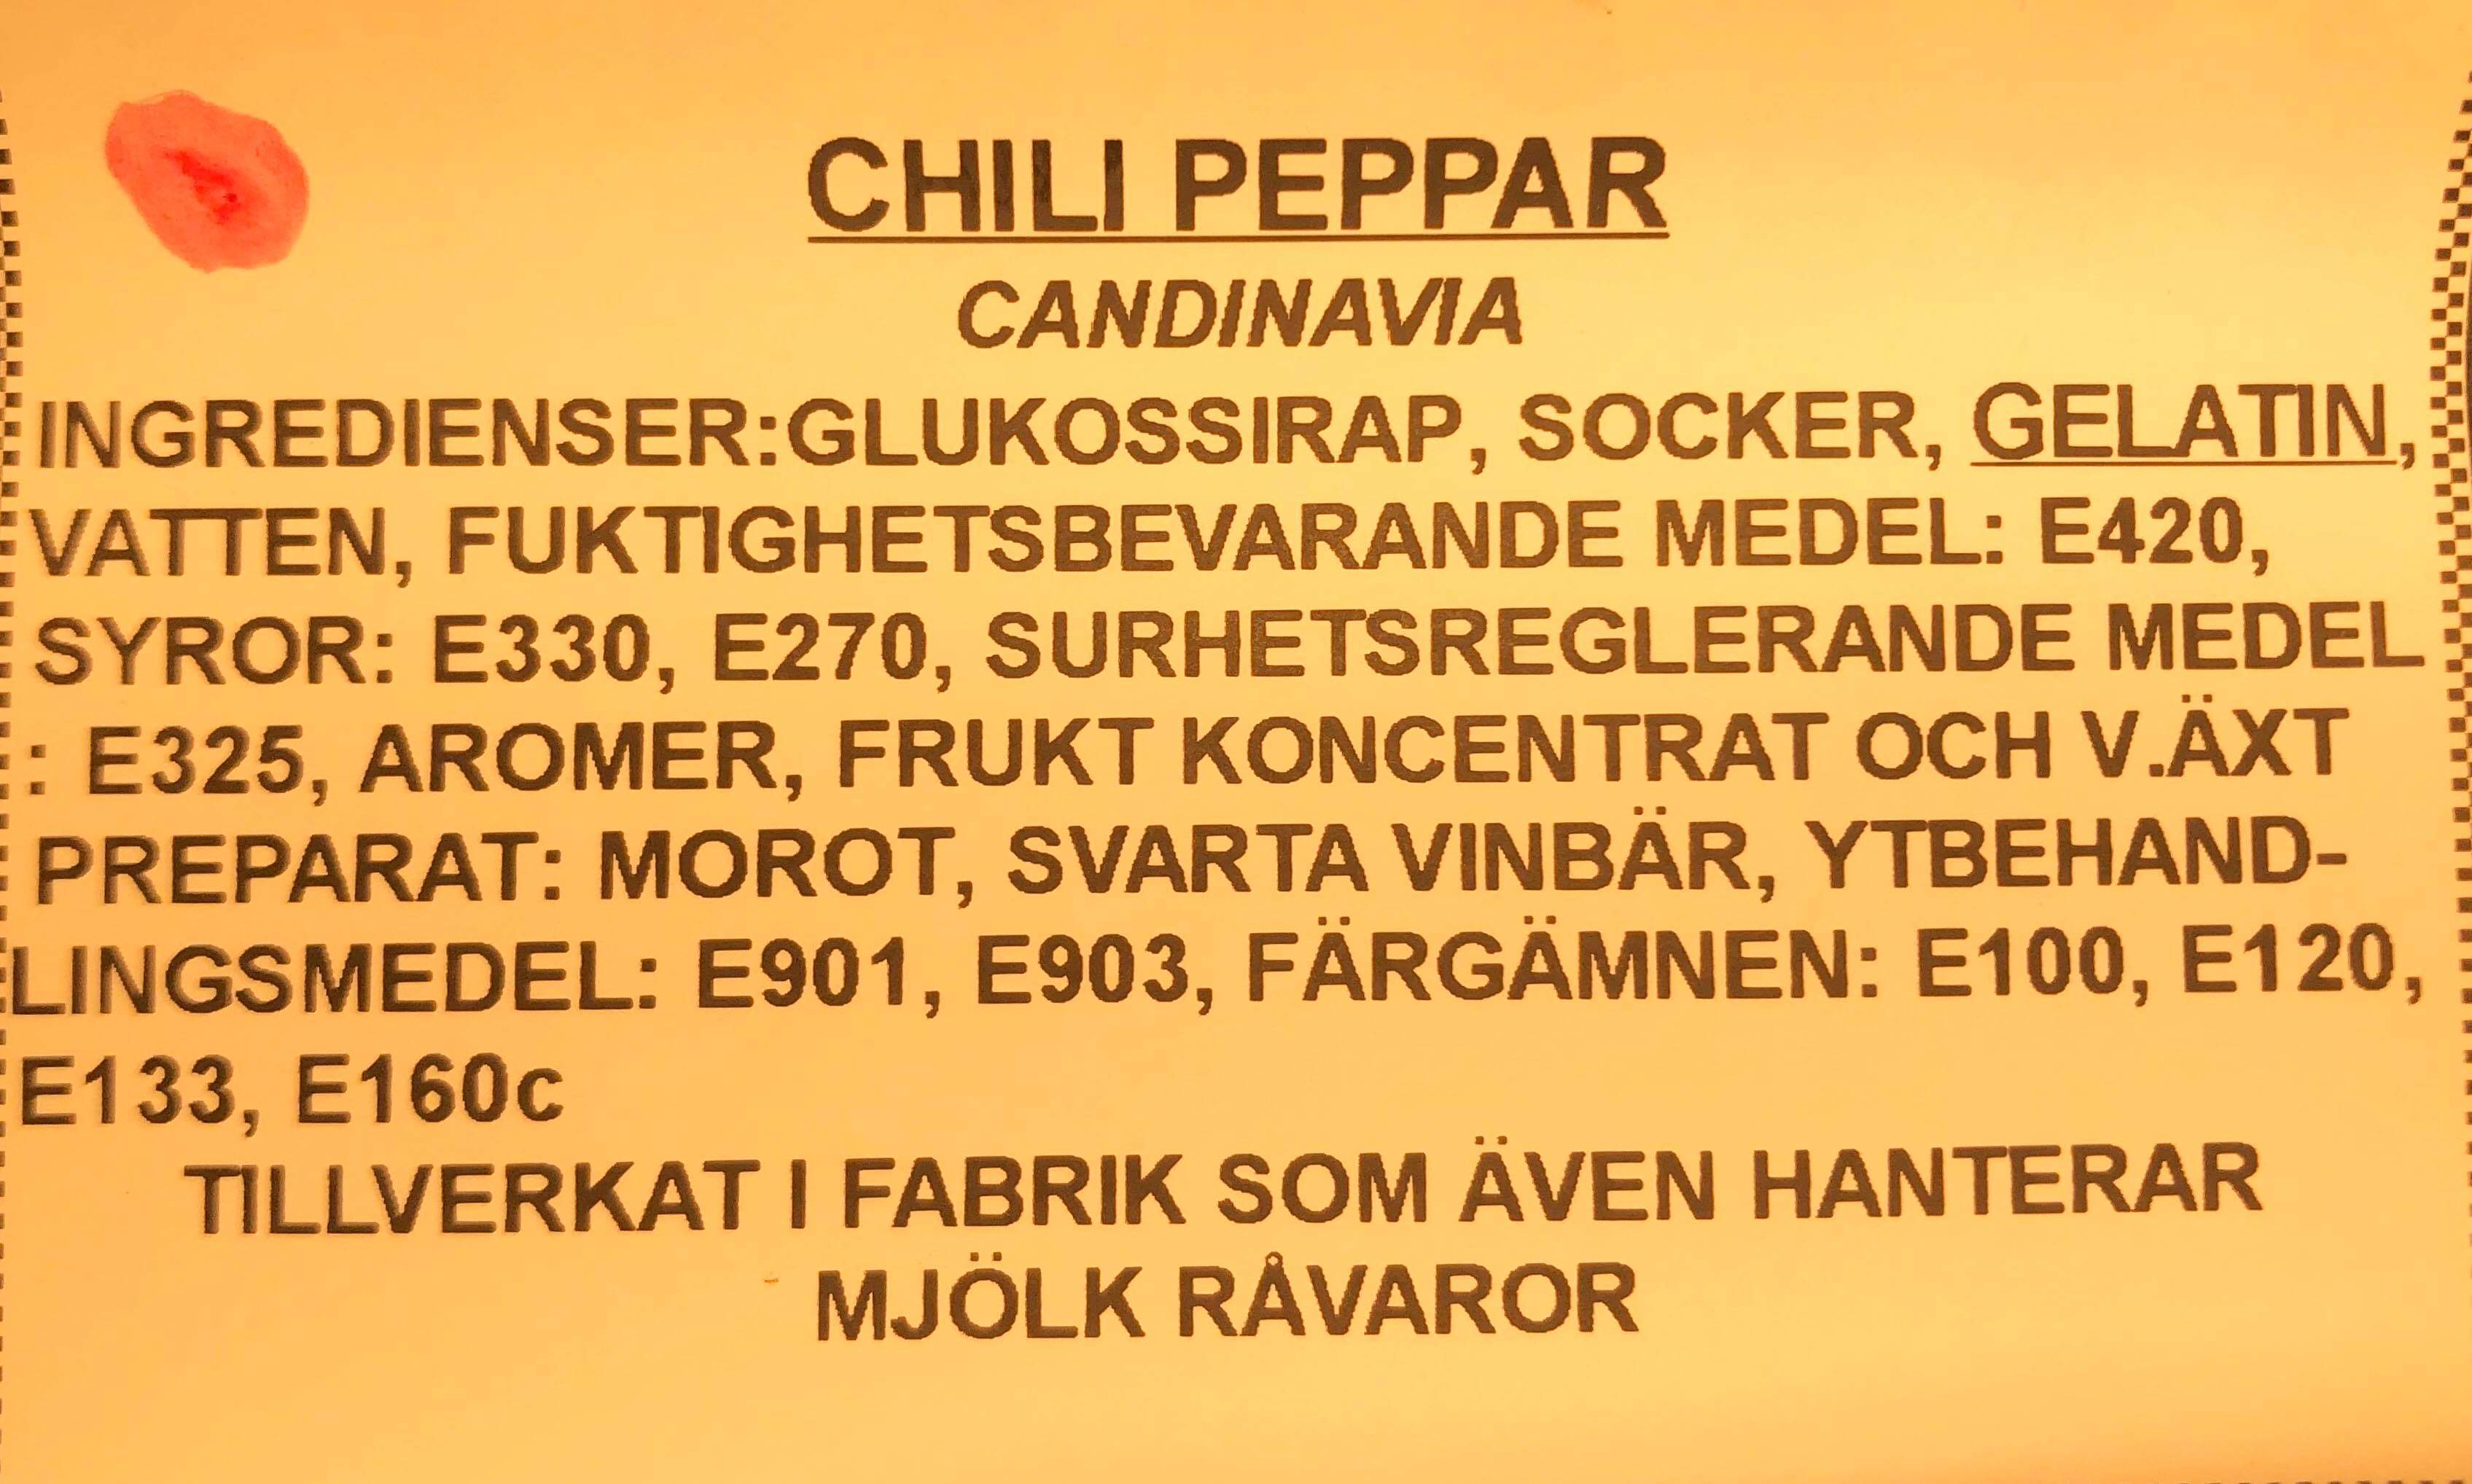 Chili peppar